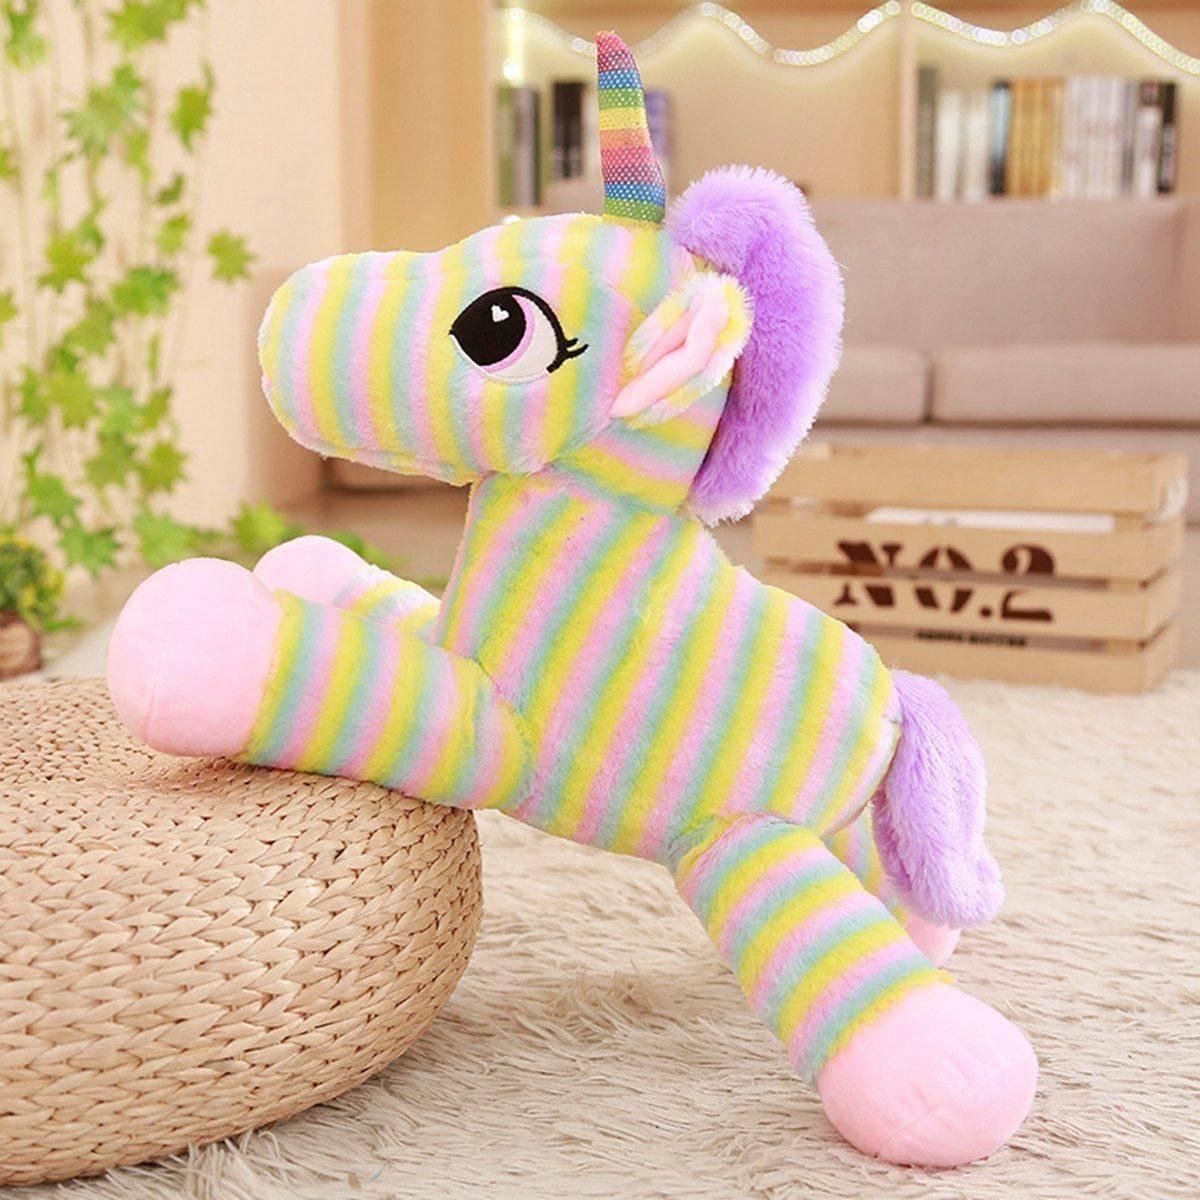 Peluche unicornio Multicolor - Un unicornio